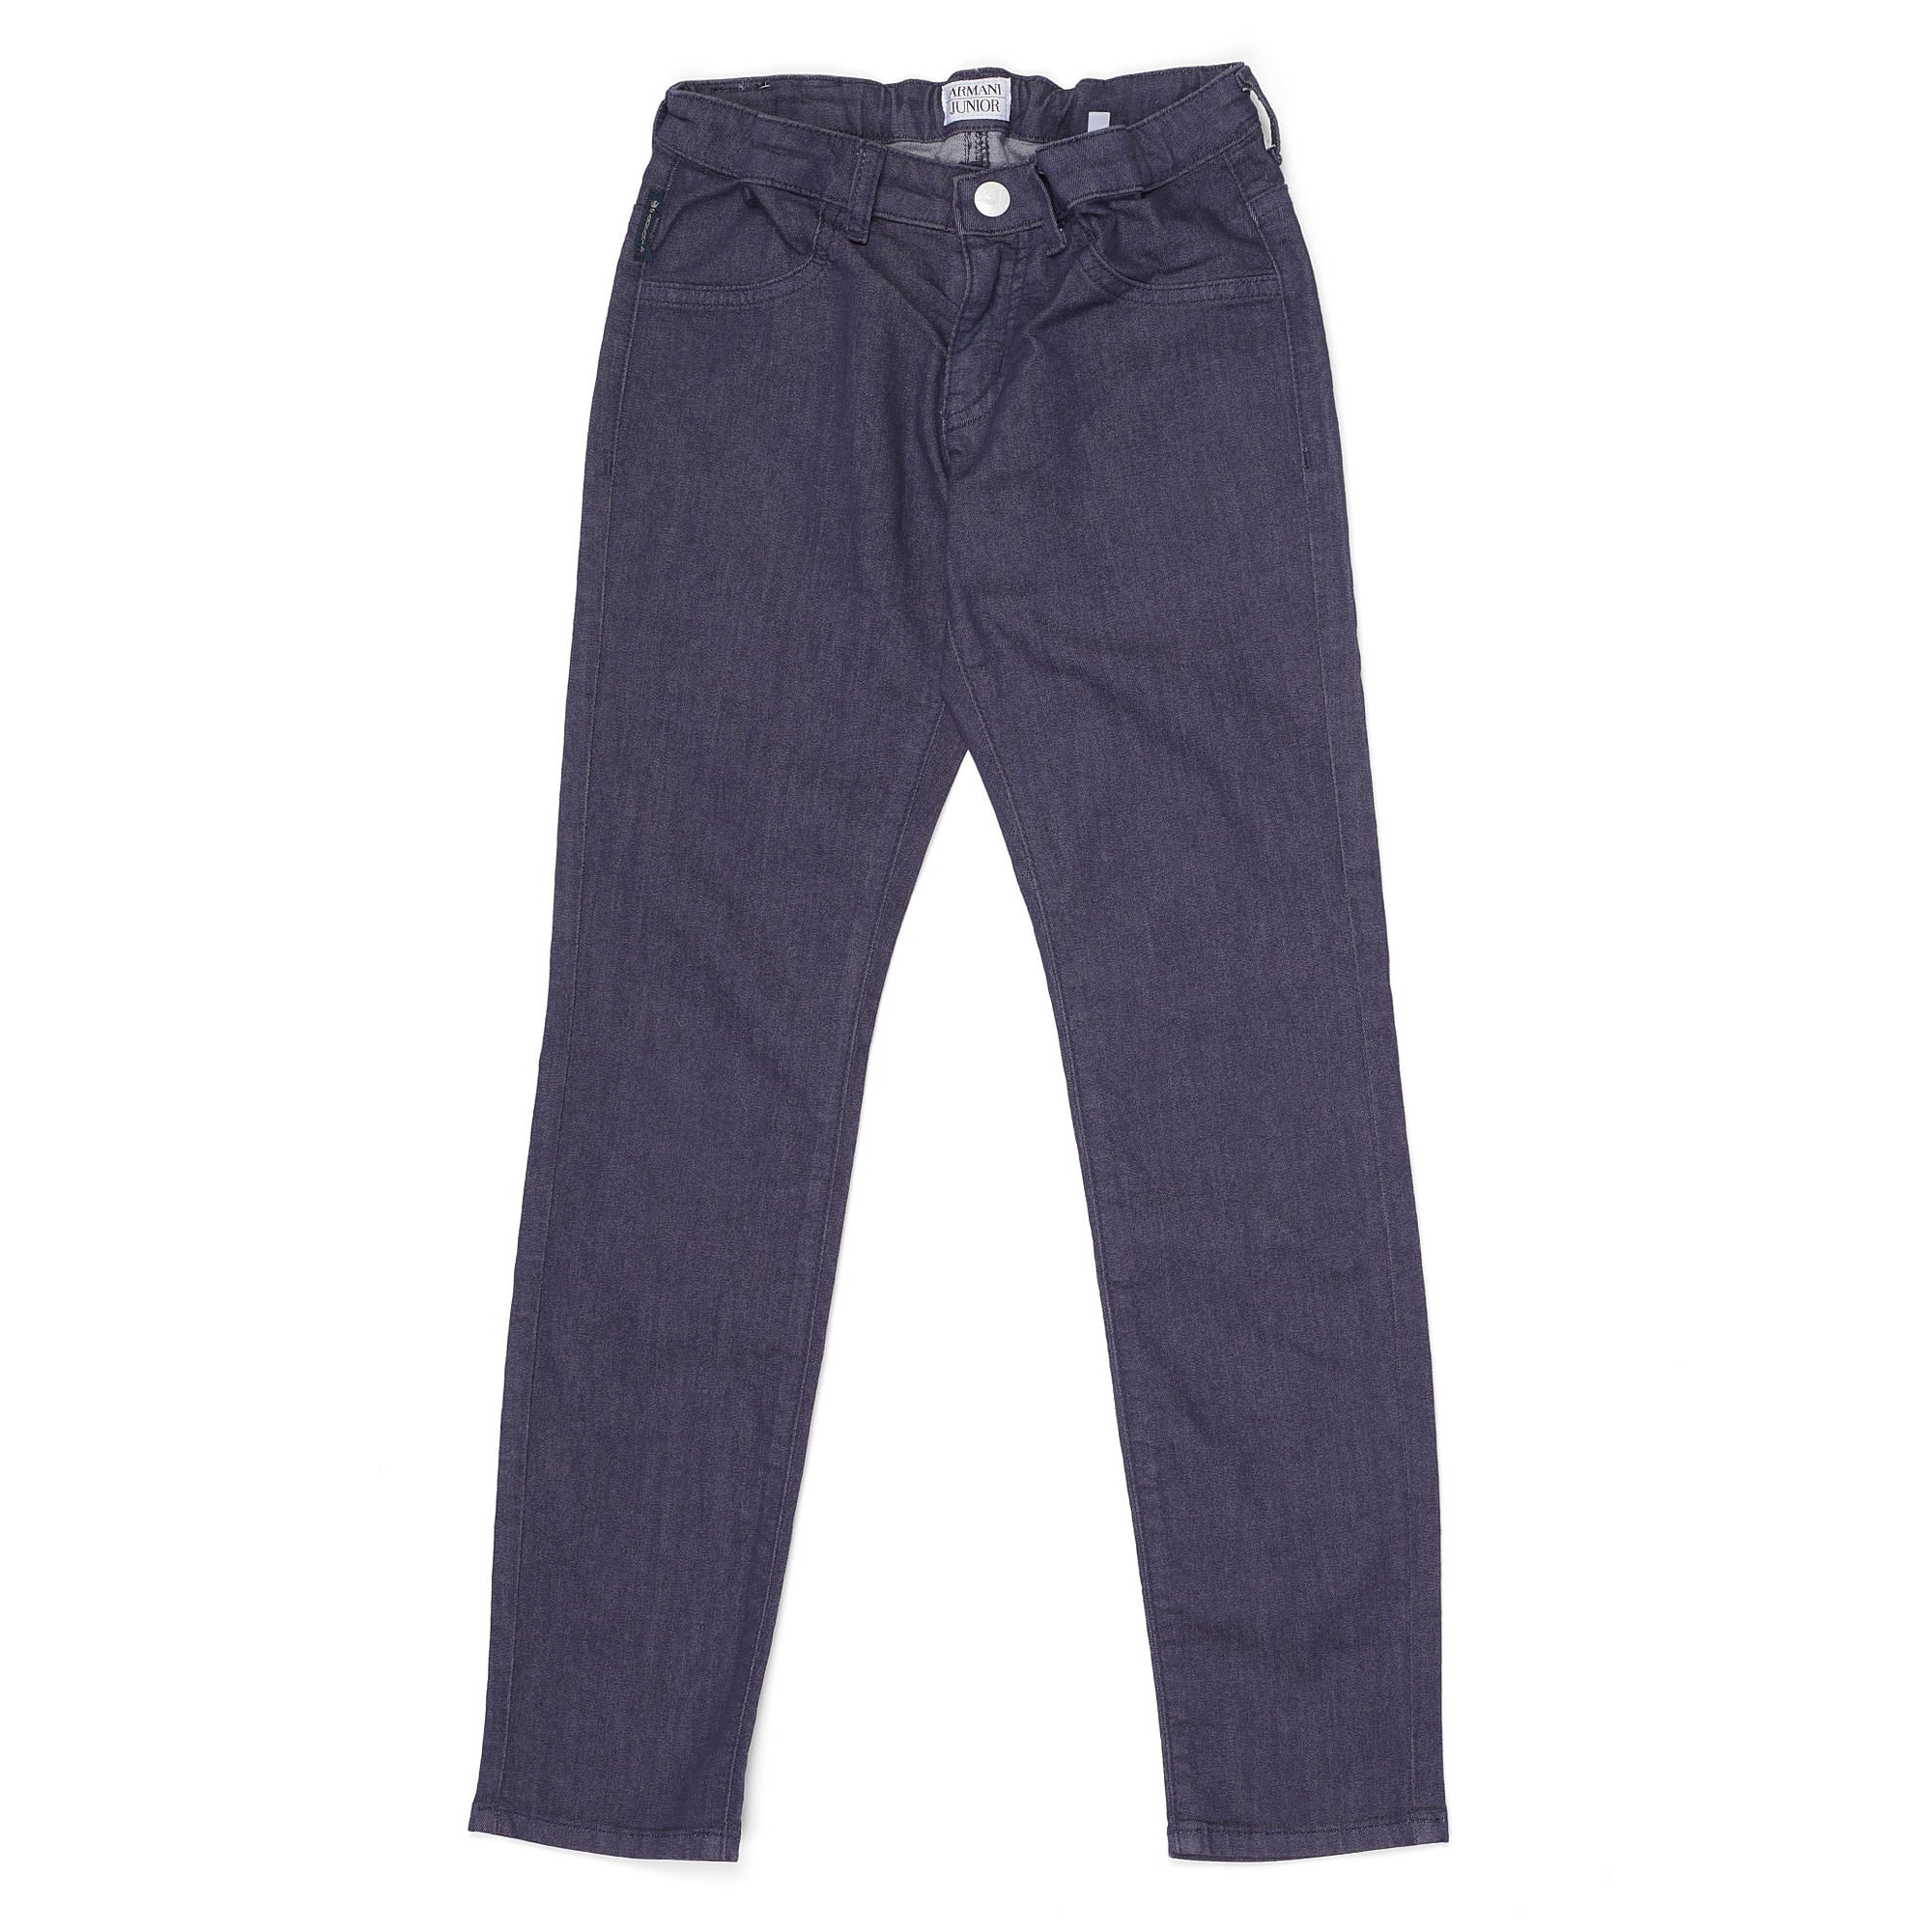 ARMANI JUNIOR Blue Cotton Blend Boys Jeans Pants 8A / 130cm – SARTORIALE